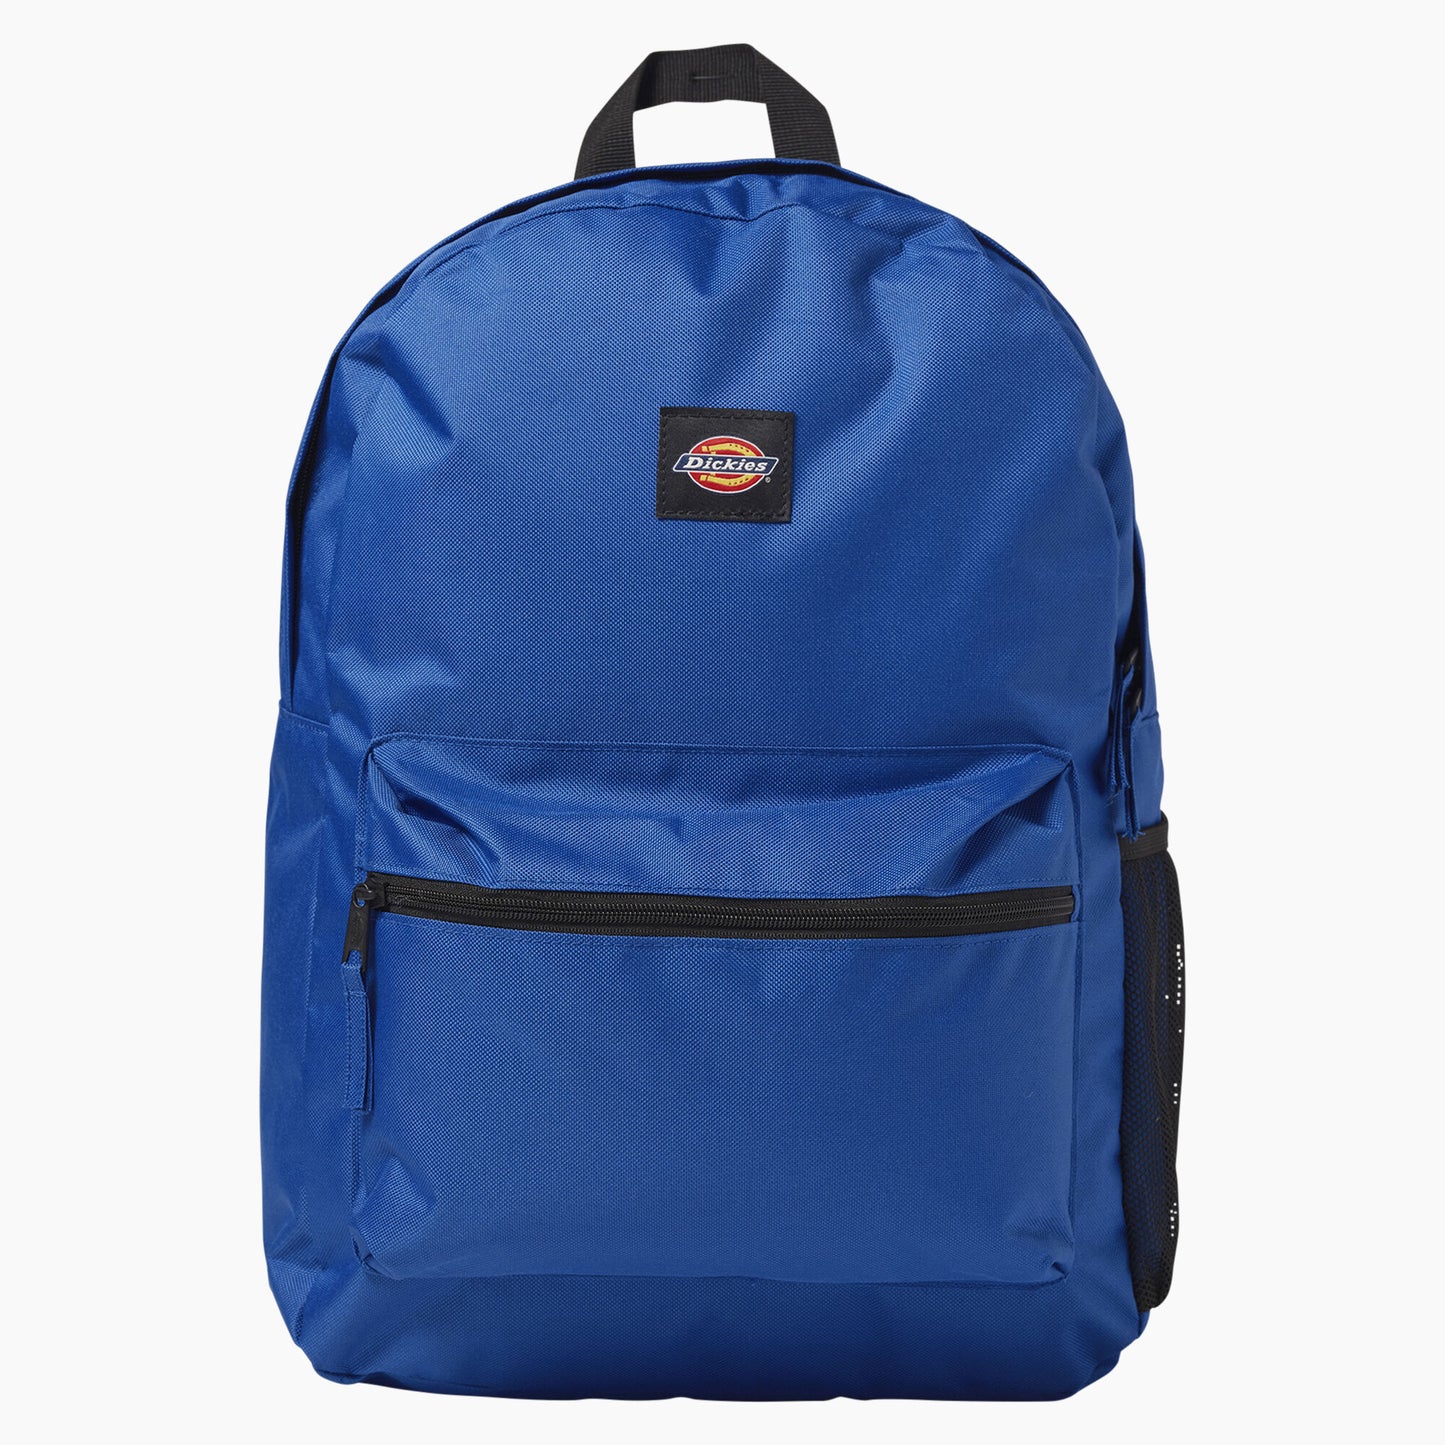 DICKIES Essential Backpack - Royal Blue